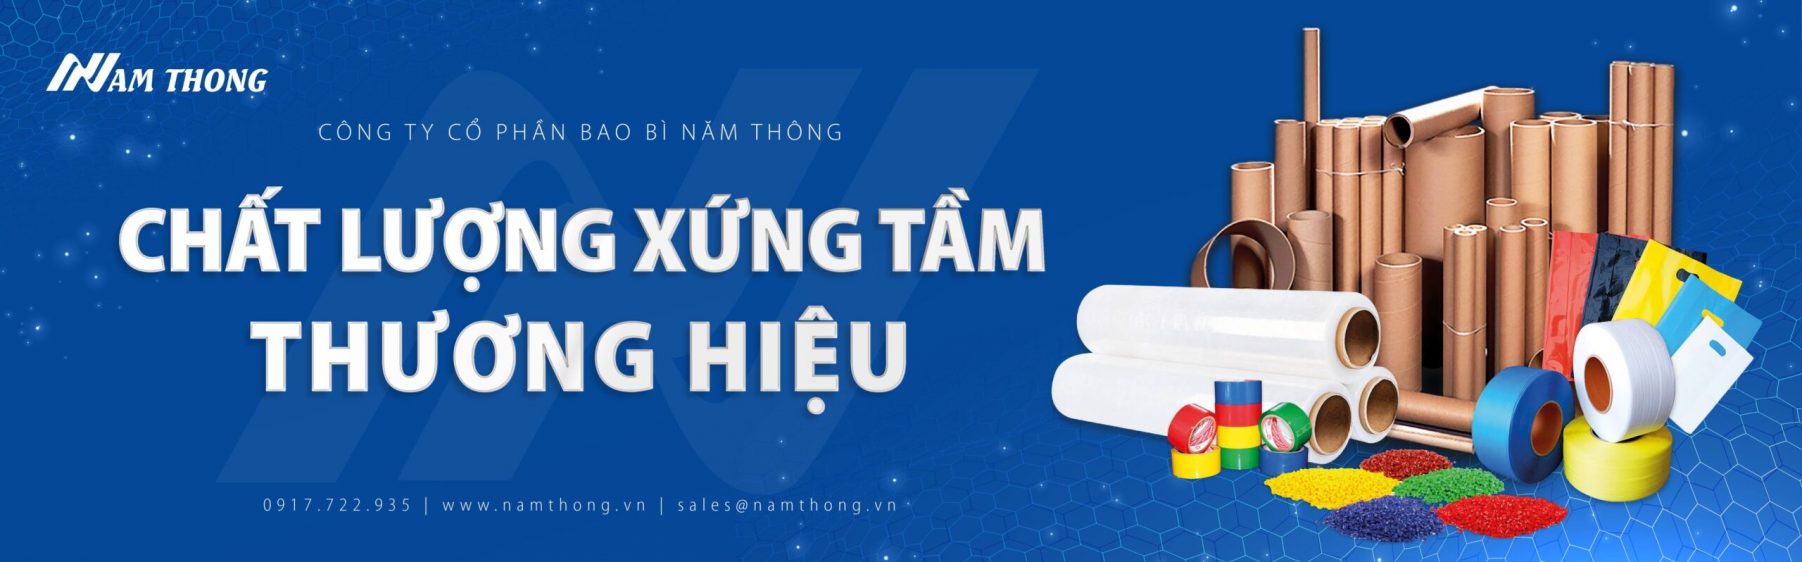 banner-nam-thong